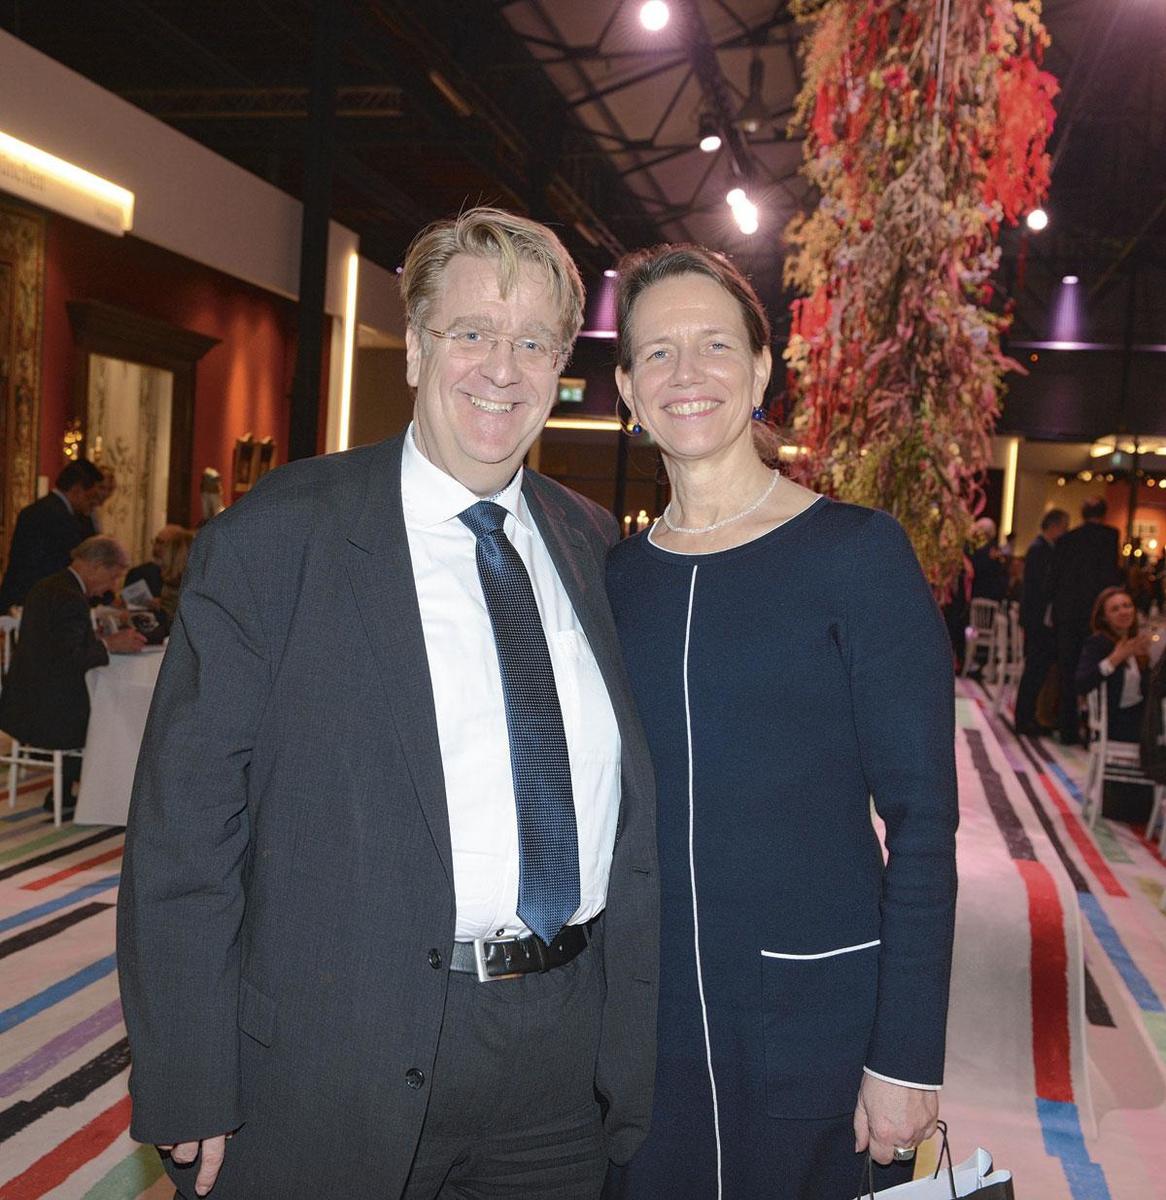 Martin Kotthaus, ambassadeur d'Allemagne  et son épouse.